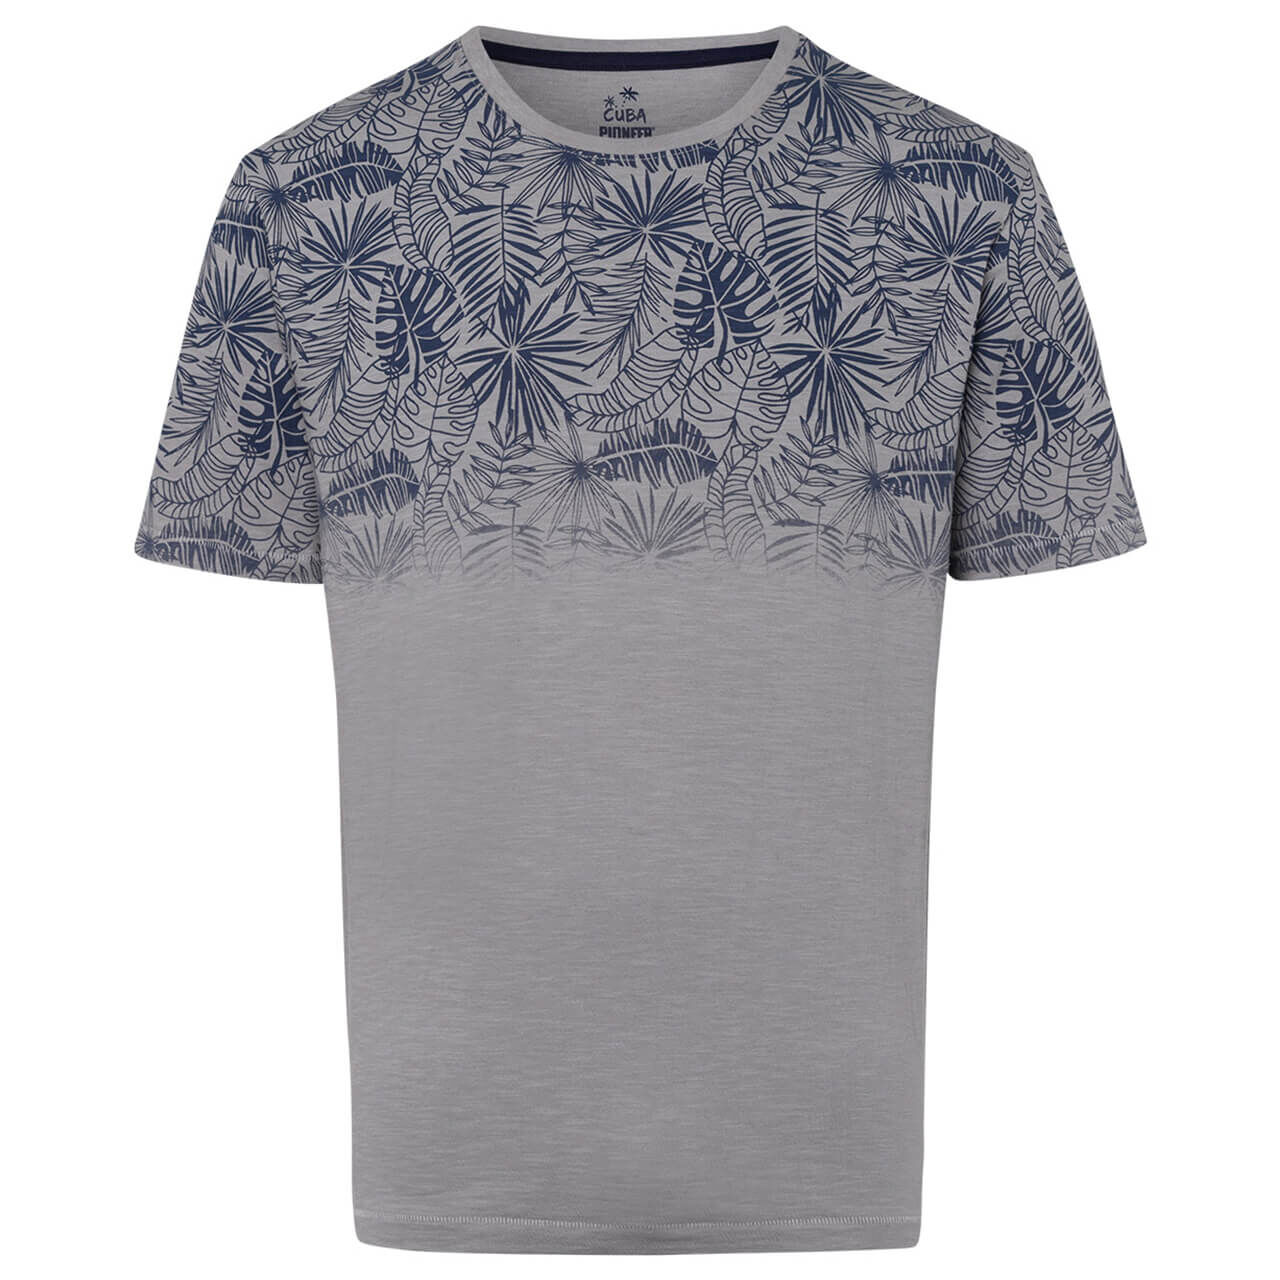 Pioneer T-Shirt für Herren in Grau mit Print, FarbNr.: 9916